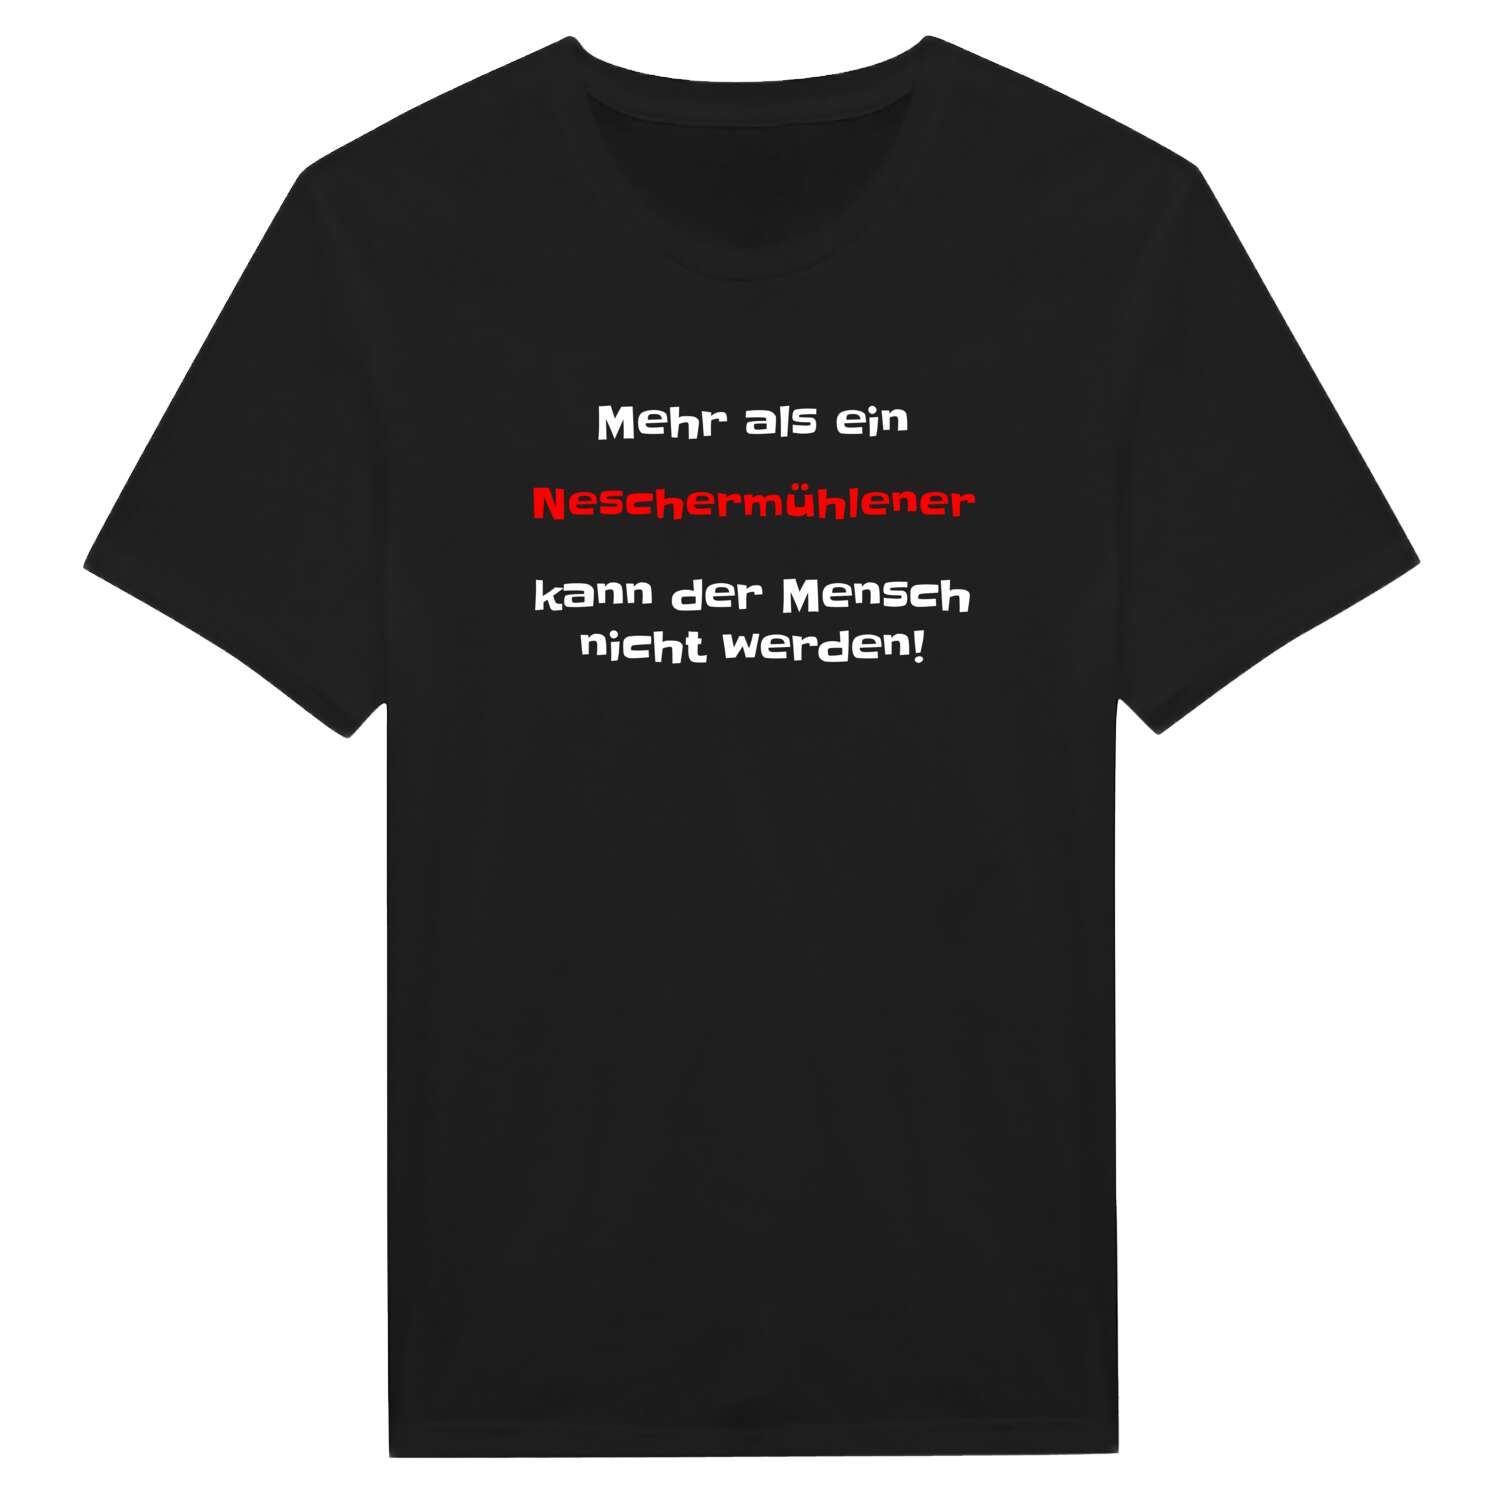 Neschermühle T-Shirt »Mehr als ein«